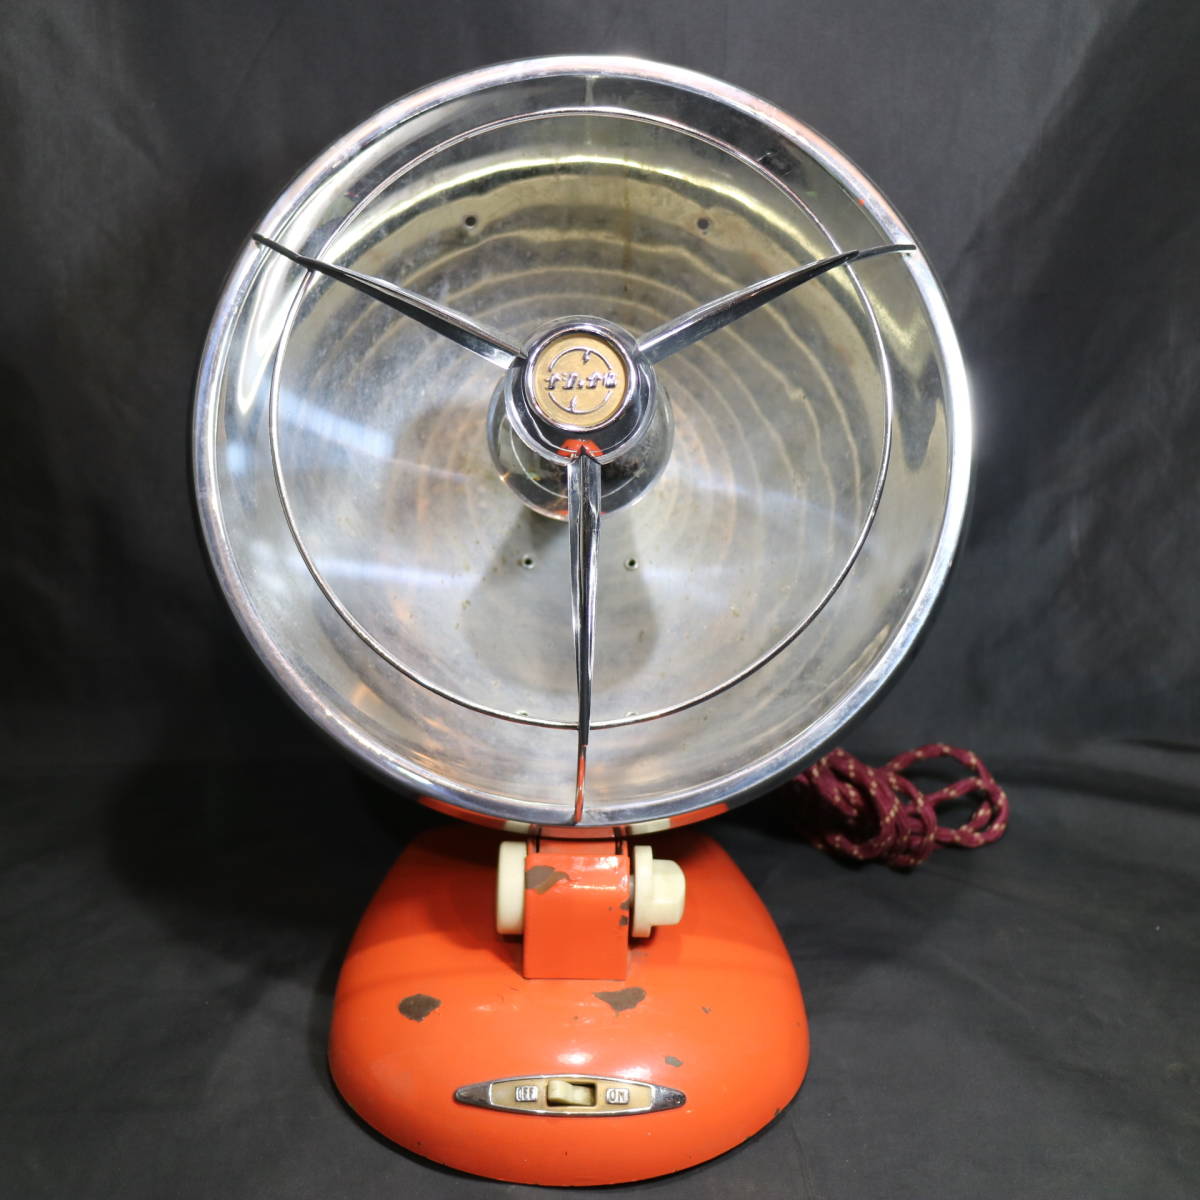 通電確認済み 当時もの ナショナル 反射ストーブ 丸型 オレンジ 松下電器 ヴィンテージ 電化製品 レトロ家電 シャビー 古物 中古の画像1